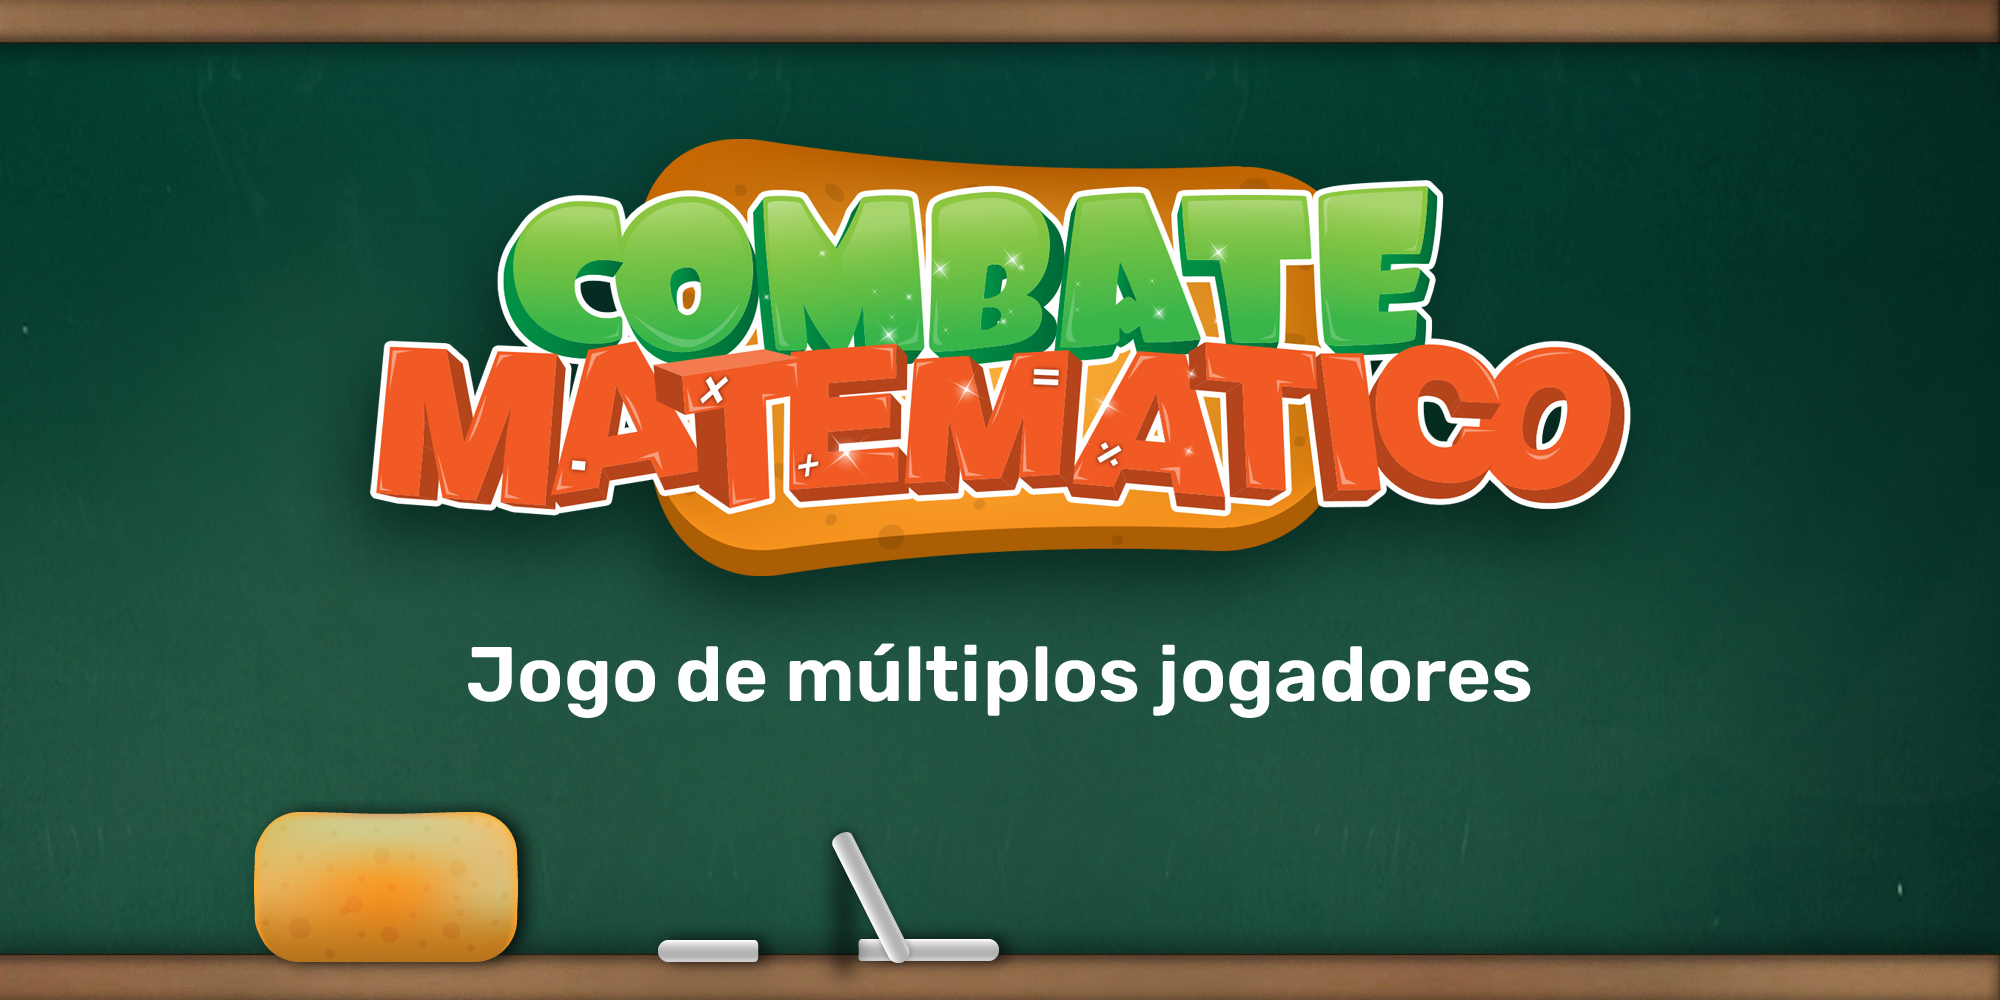 Jogos matemáticos em forma de jogos educativos, 3 jogos de matemática  online »